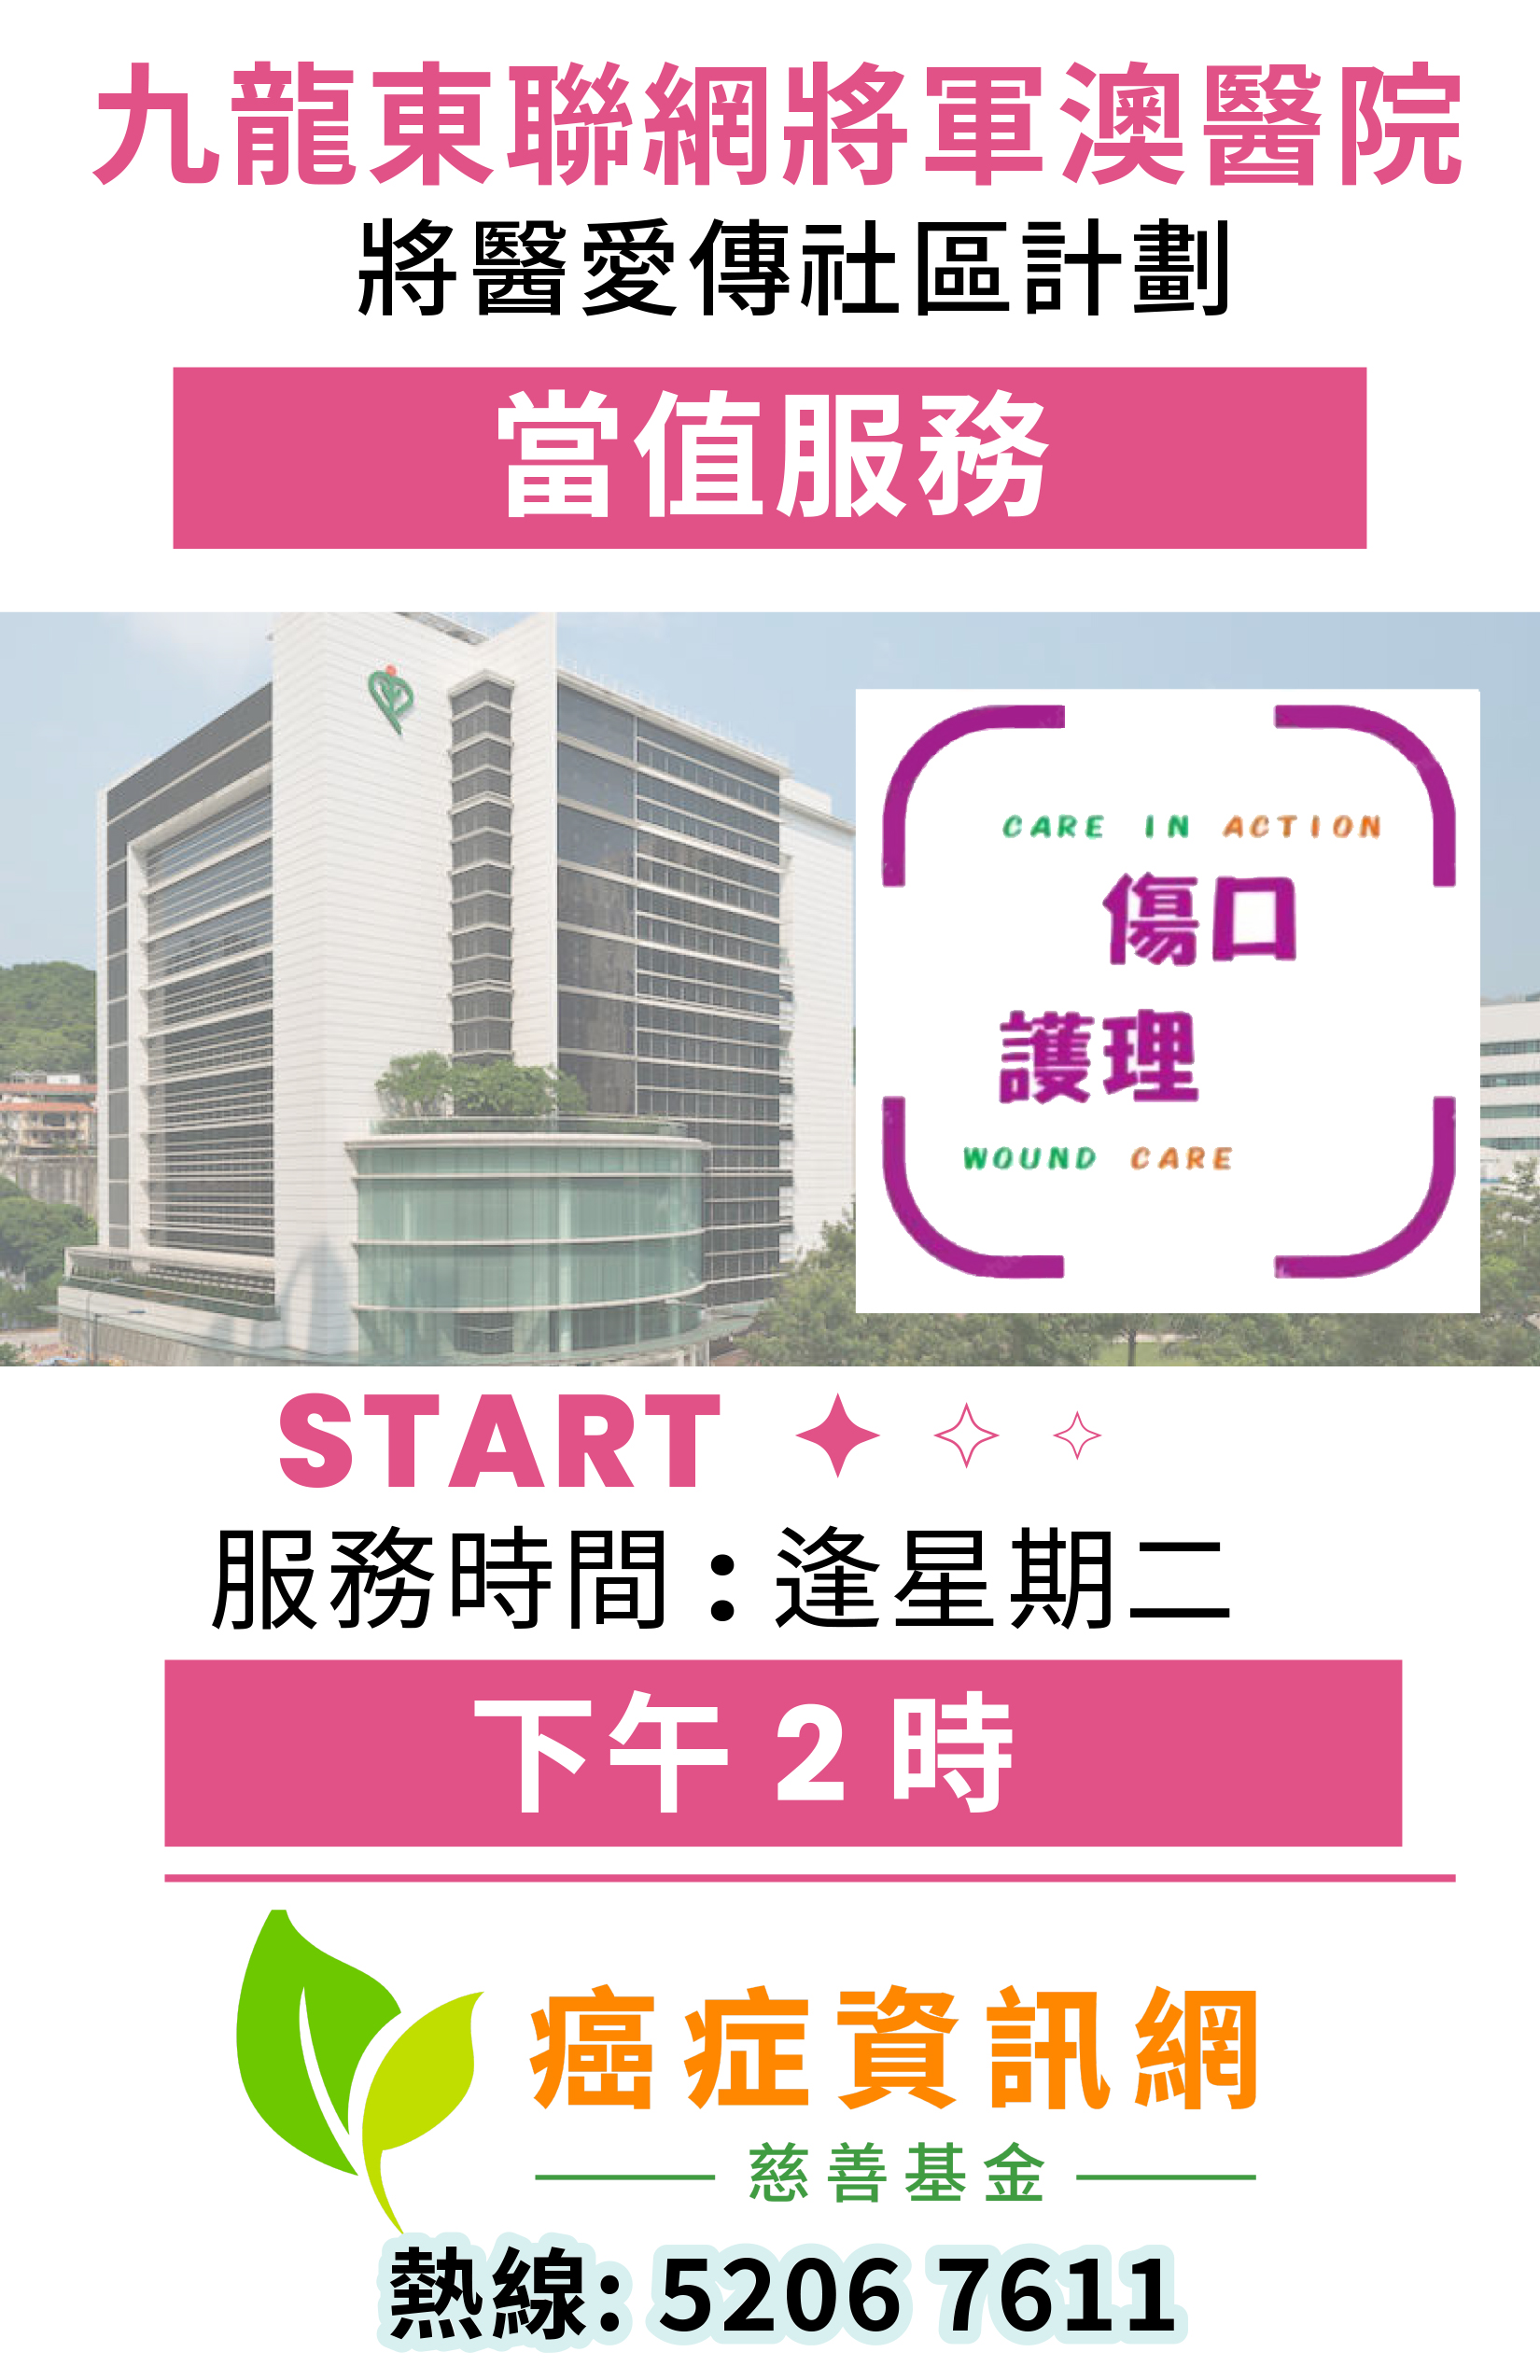 九龍東醫院聯網將軍澳醫院「將醫愛傳社區」計劃